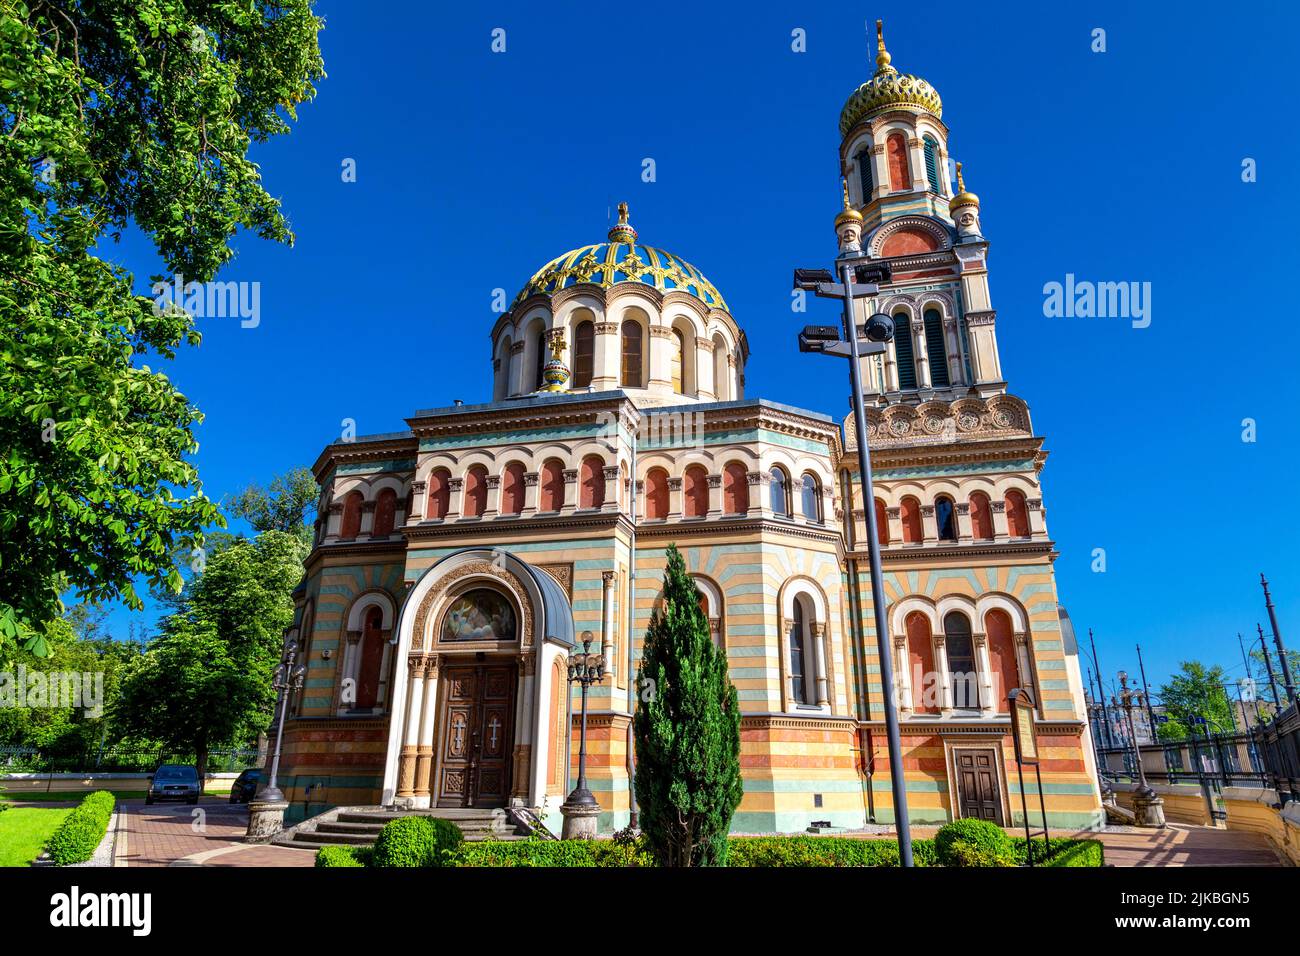 Exterior of Alexander Nevsky Cathedral (Sobór św. Aleksandra Newskiego w Łodzi), Lodz, Poland Stock Photo